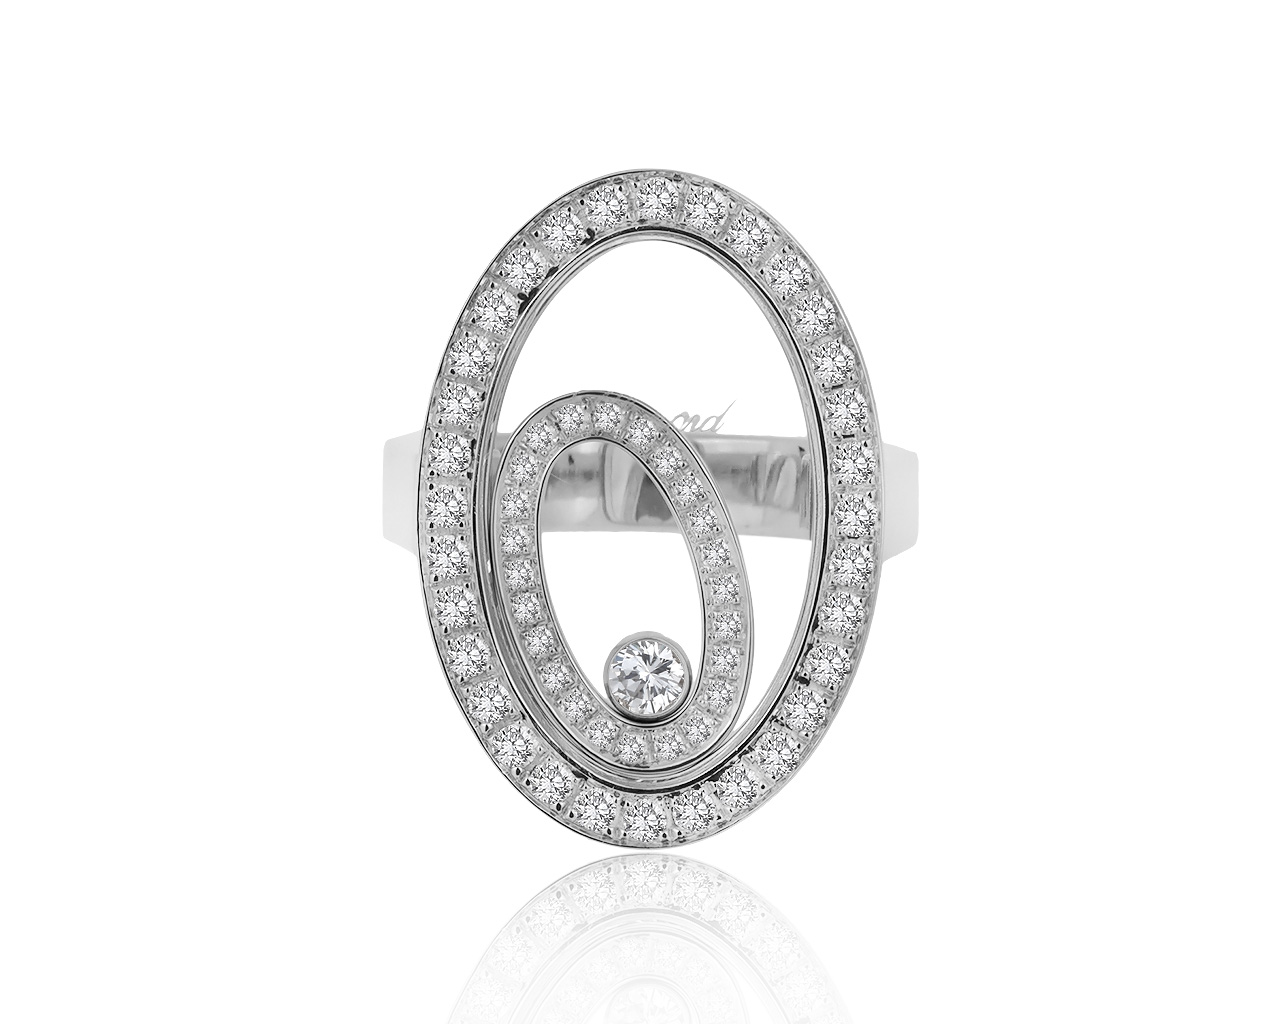 Оригинальное золотое кольцо с бриллиантами 0.66ct Chopard